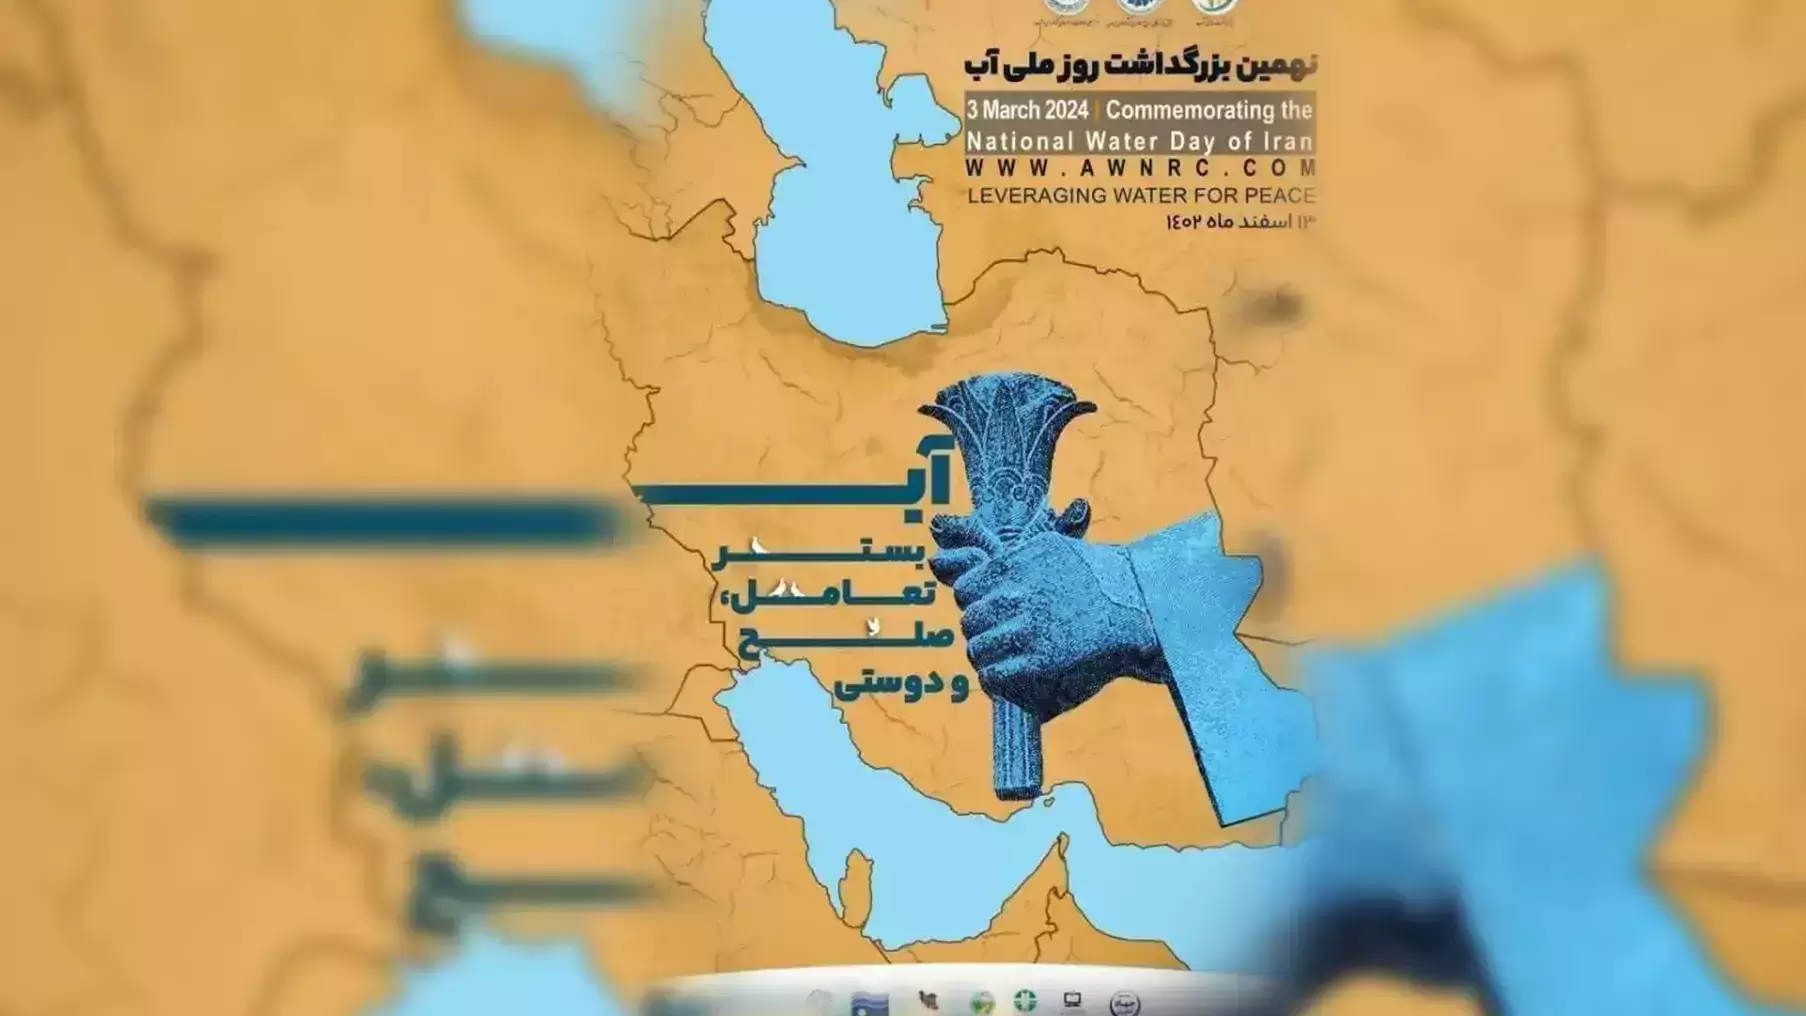 معمای حذف دریاچه ارومیه از پوستر بزرگداشت روز ملی آب